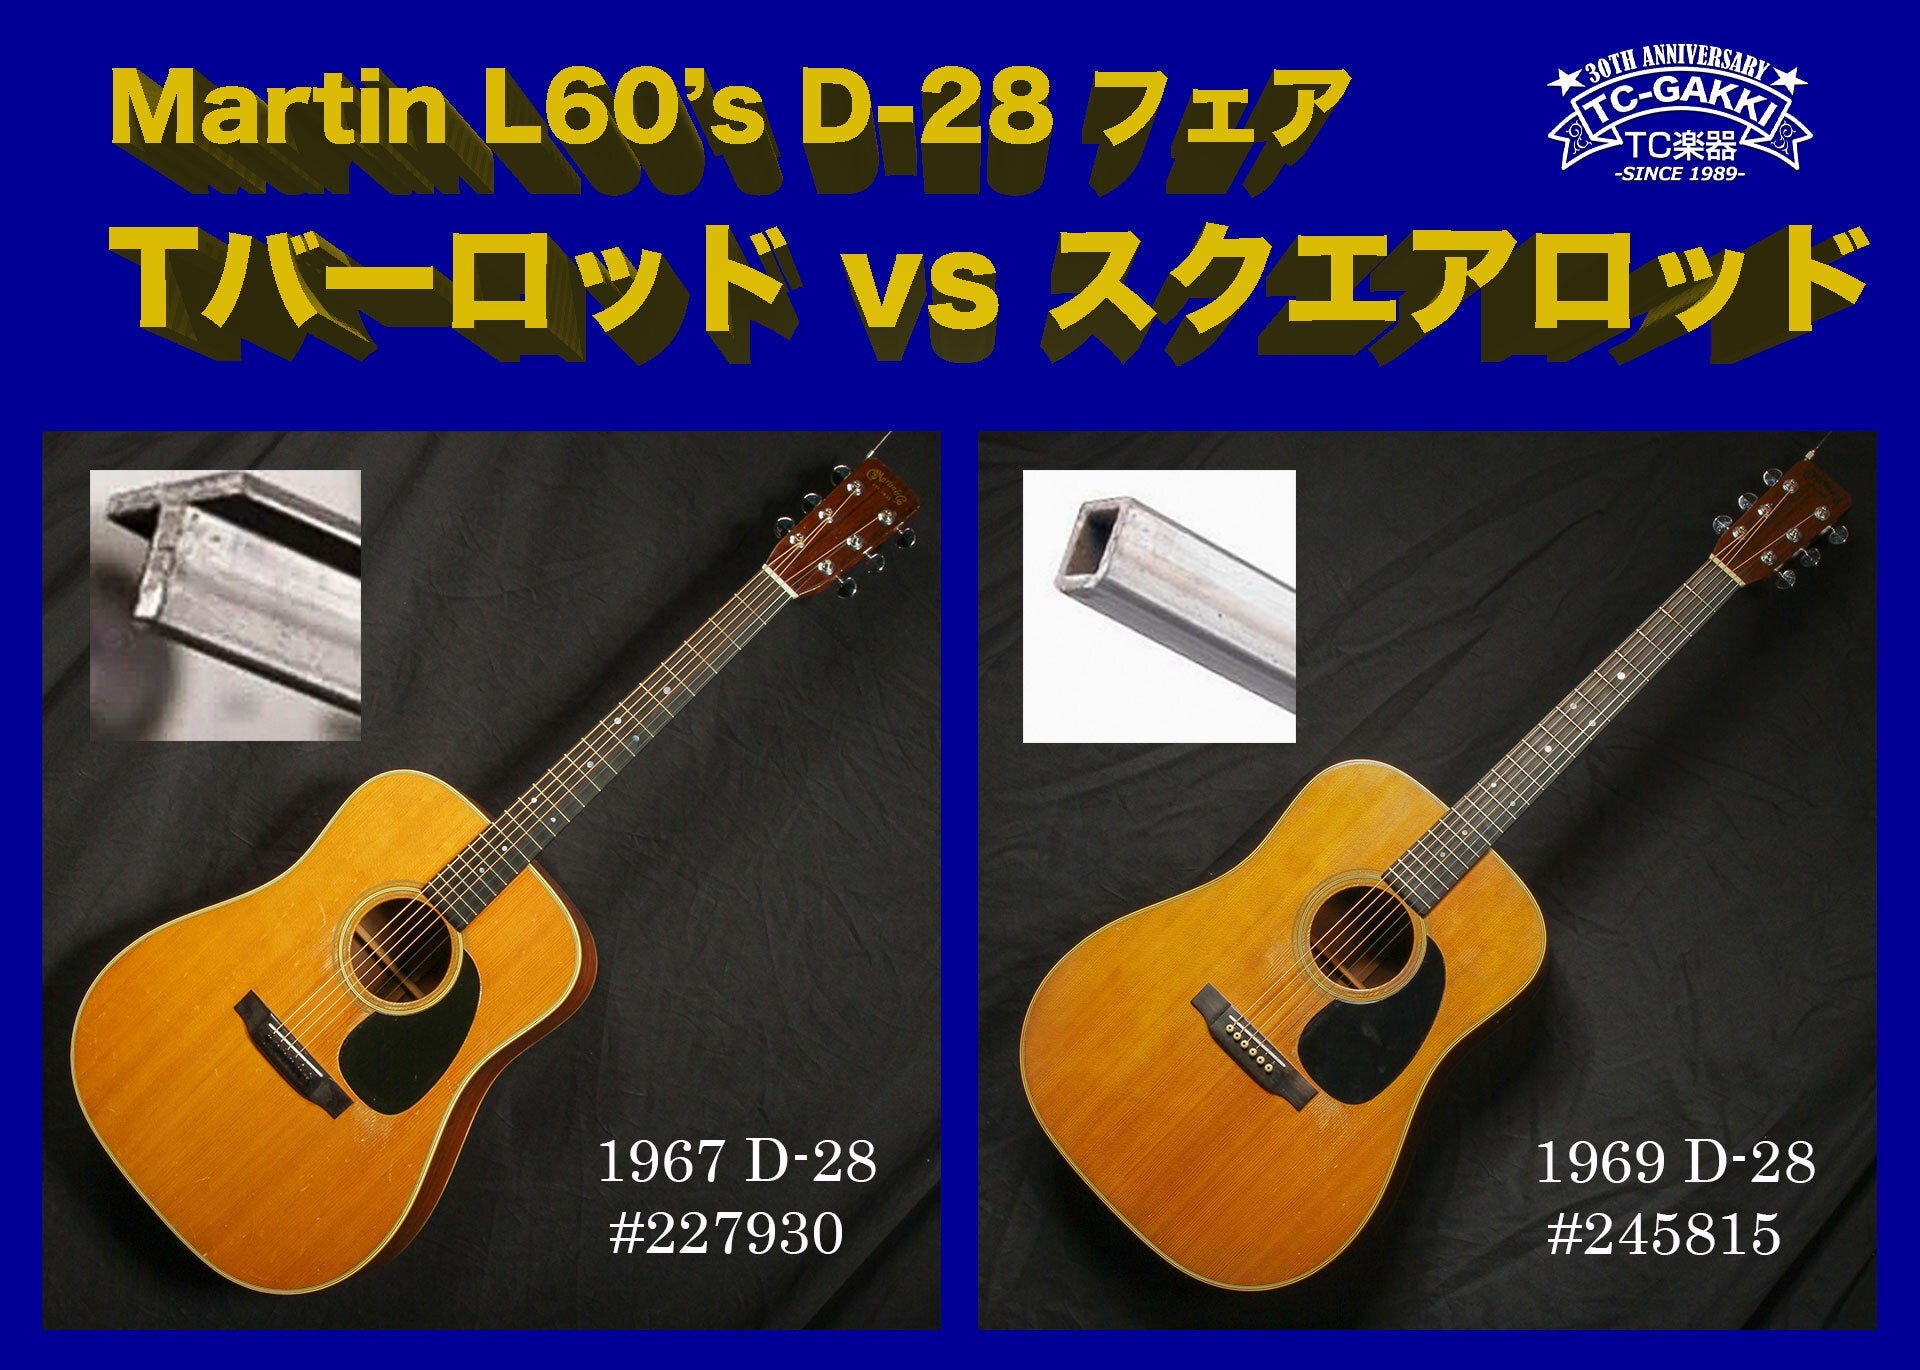 Martin Late 1960's D-28フェア!!〜Tバーロッド vs スクエアロッド〜 - TC楽器 - TCGAKKI